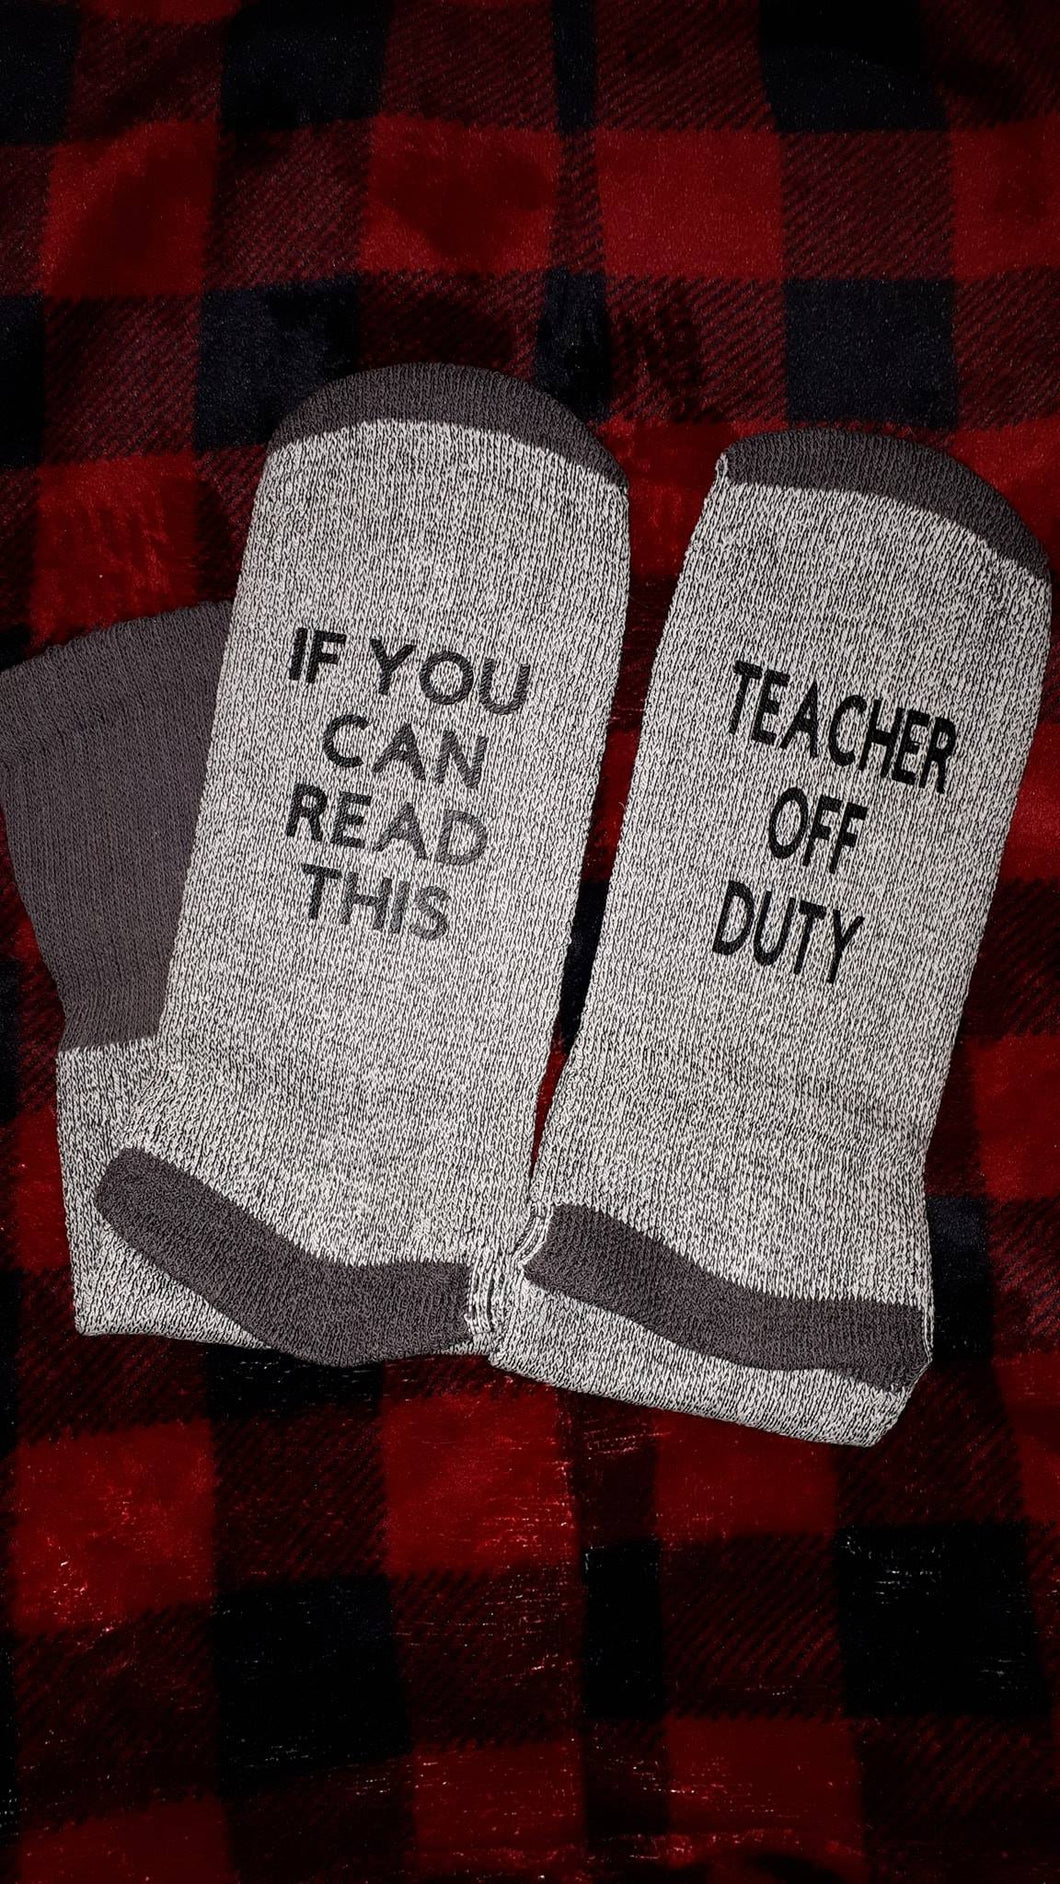 Teacher Off Duty